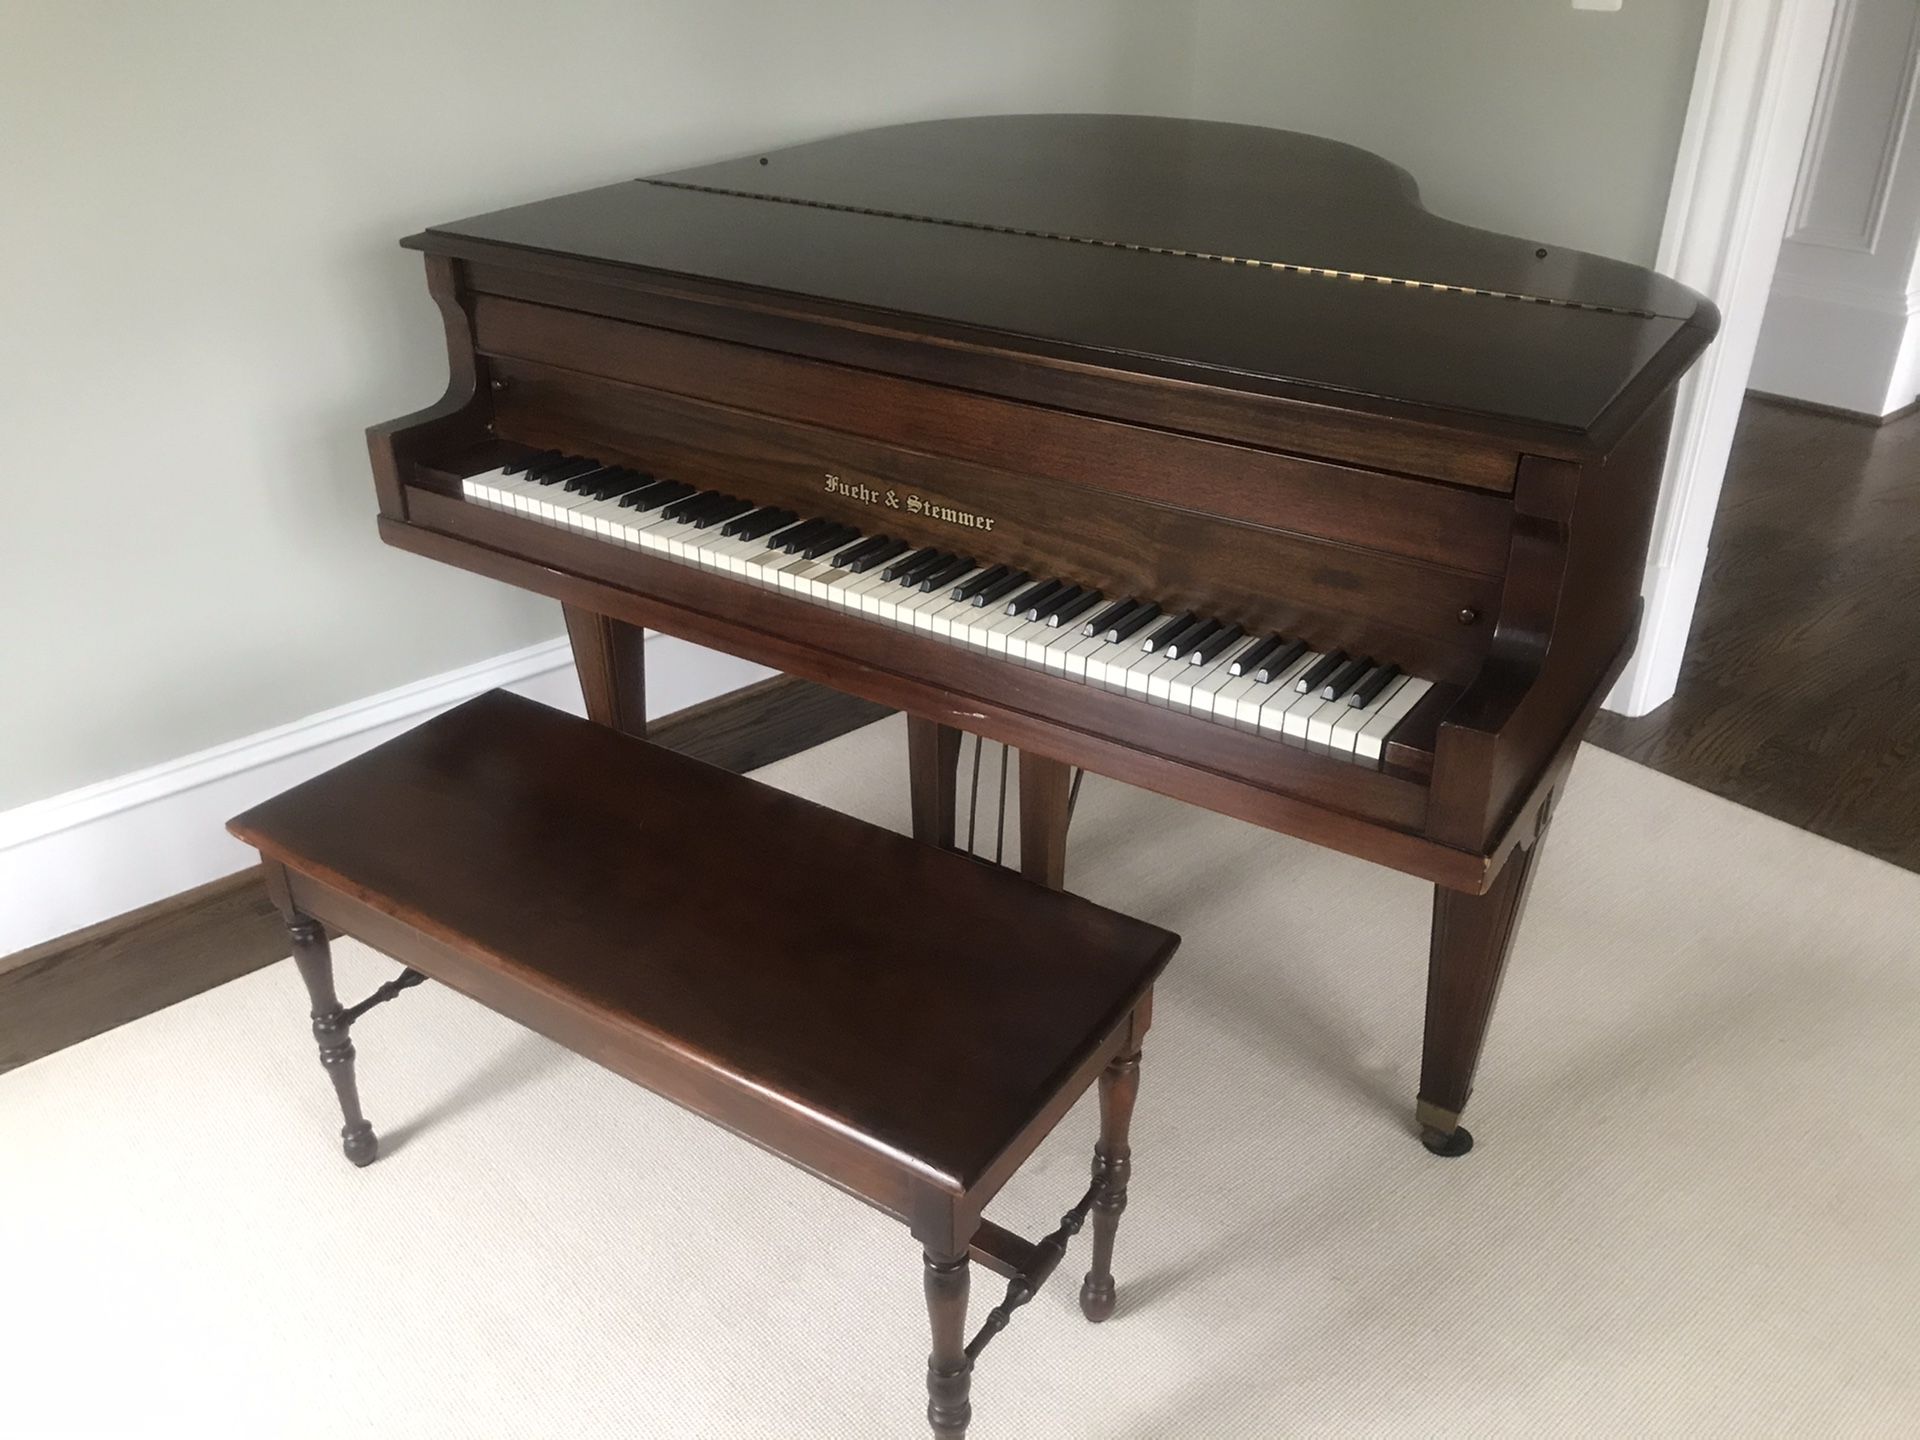 Antique Piano